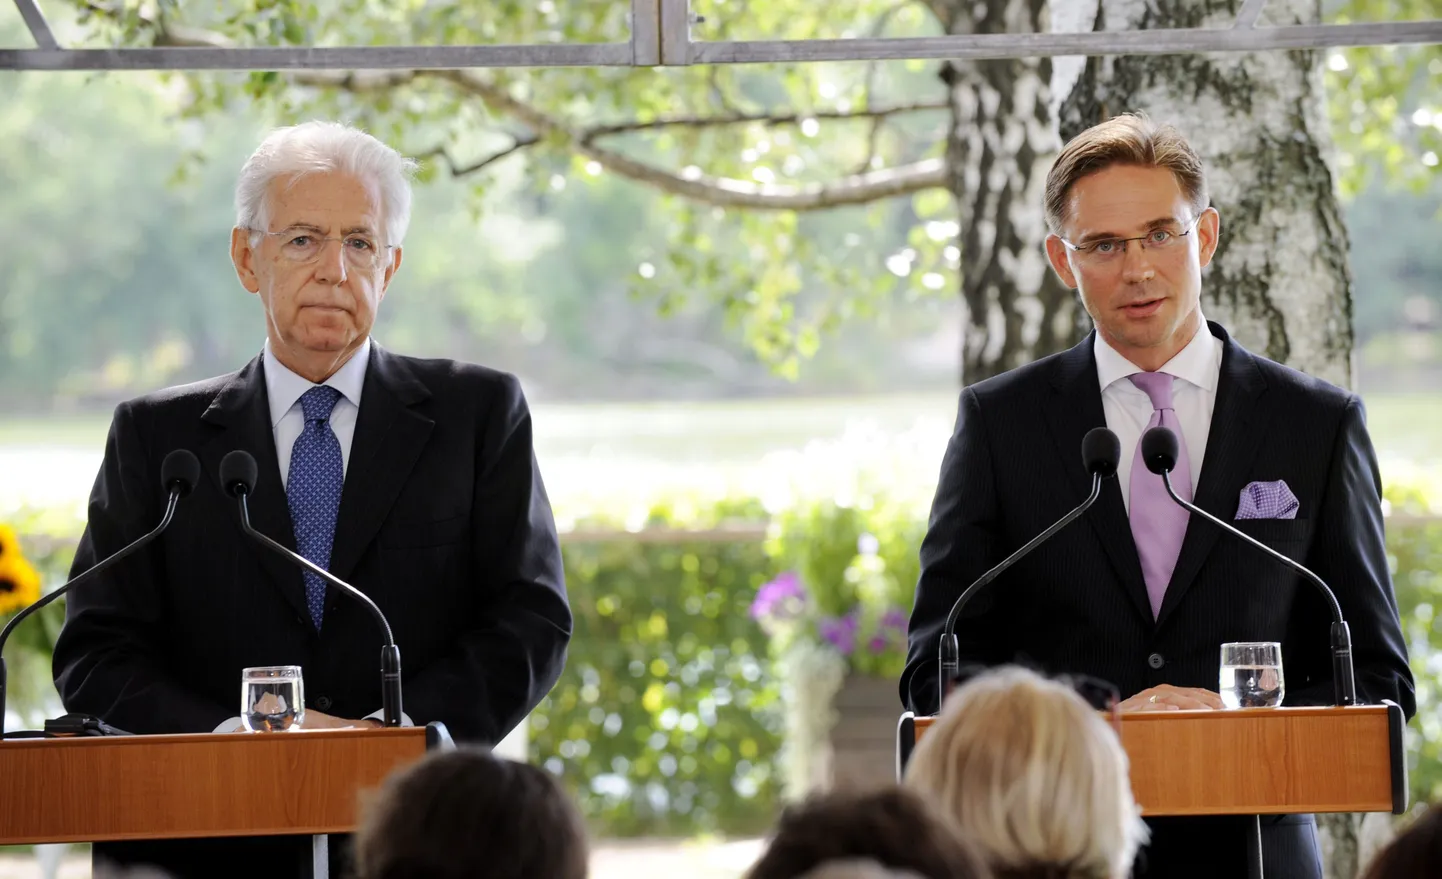 Itaalia peaminister Mario Monti Soome kolleegi külastamas.